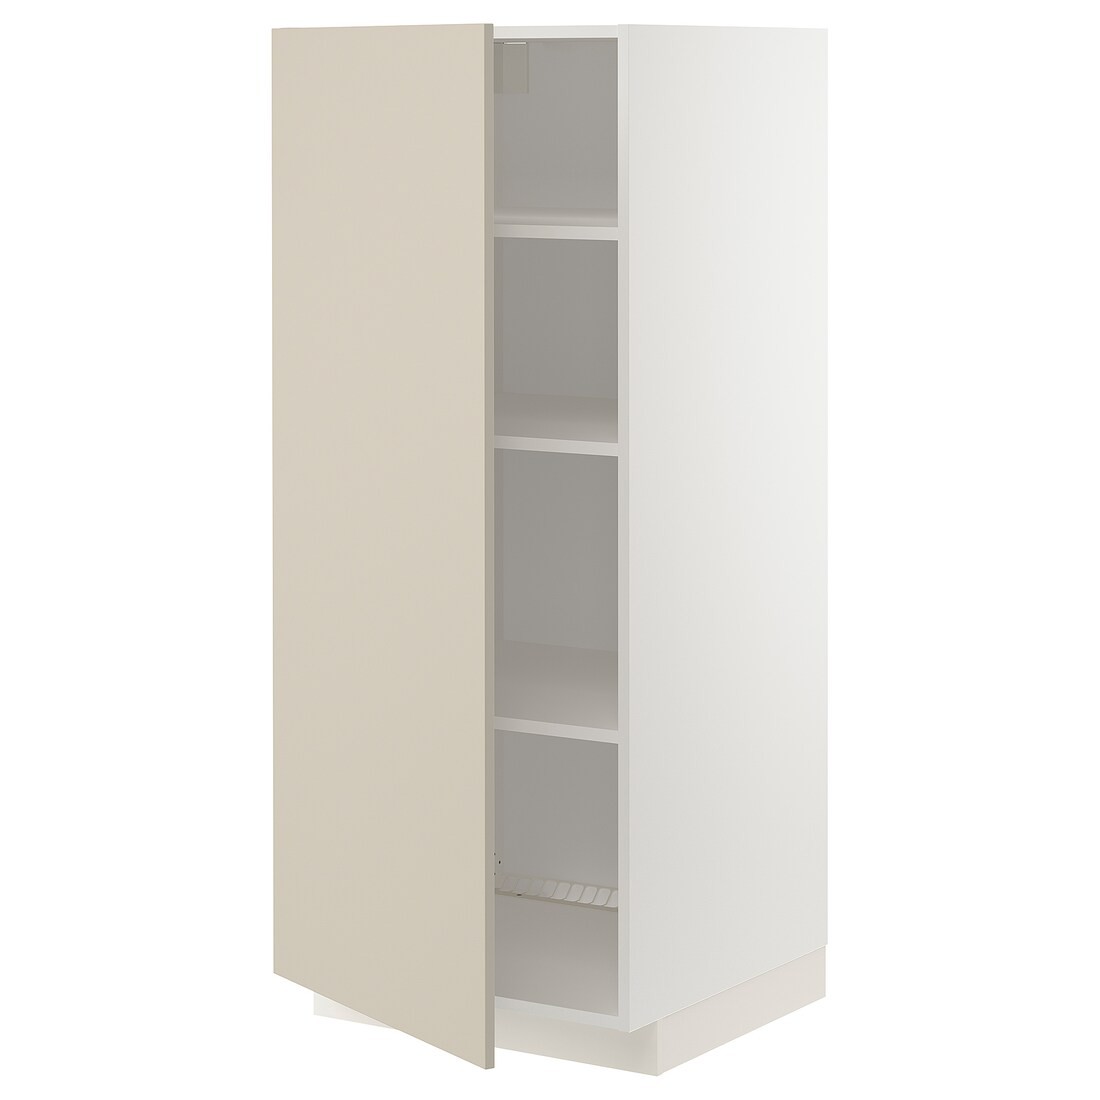 IKEA METOD МЕТОД Высокий шкаф с полками, белый / Havstorp бежевый, 60x60x140 см 29467658 | 294.676.58